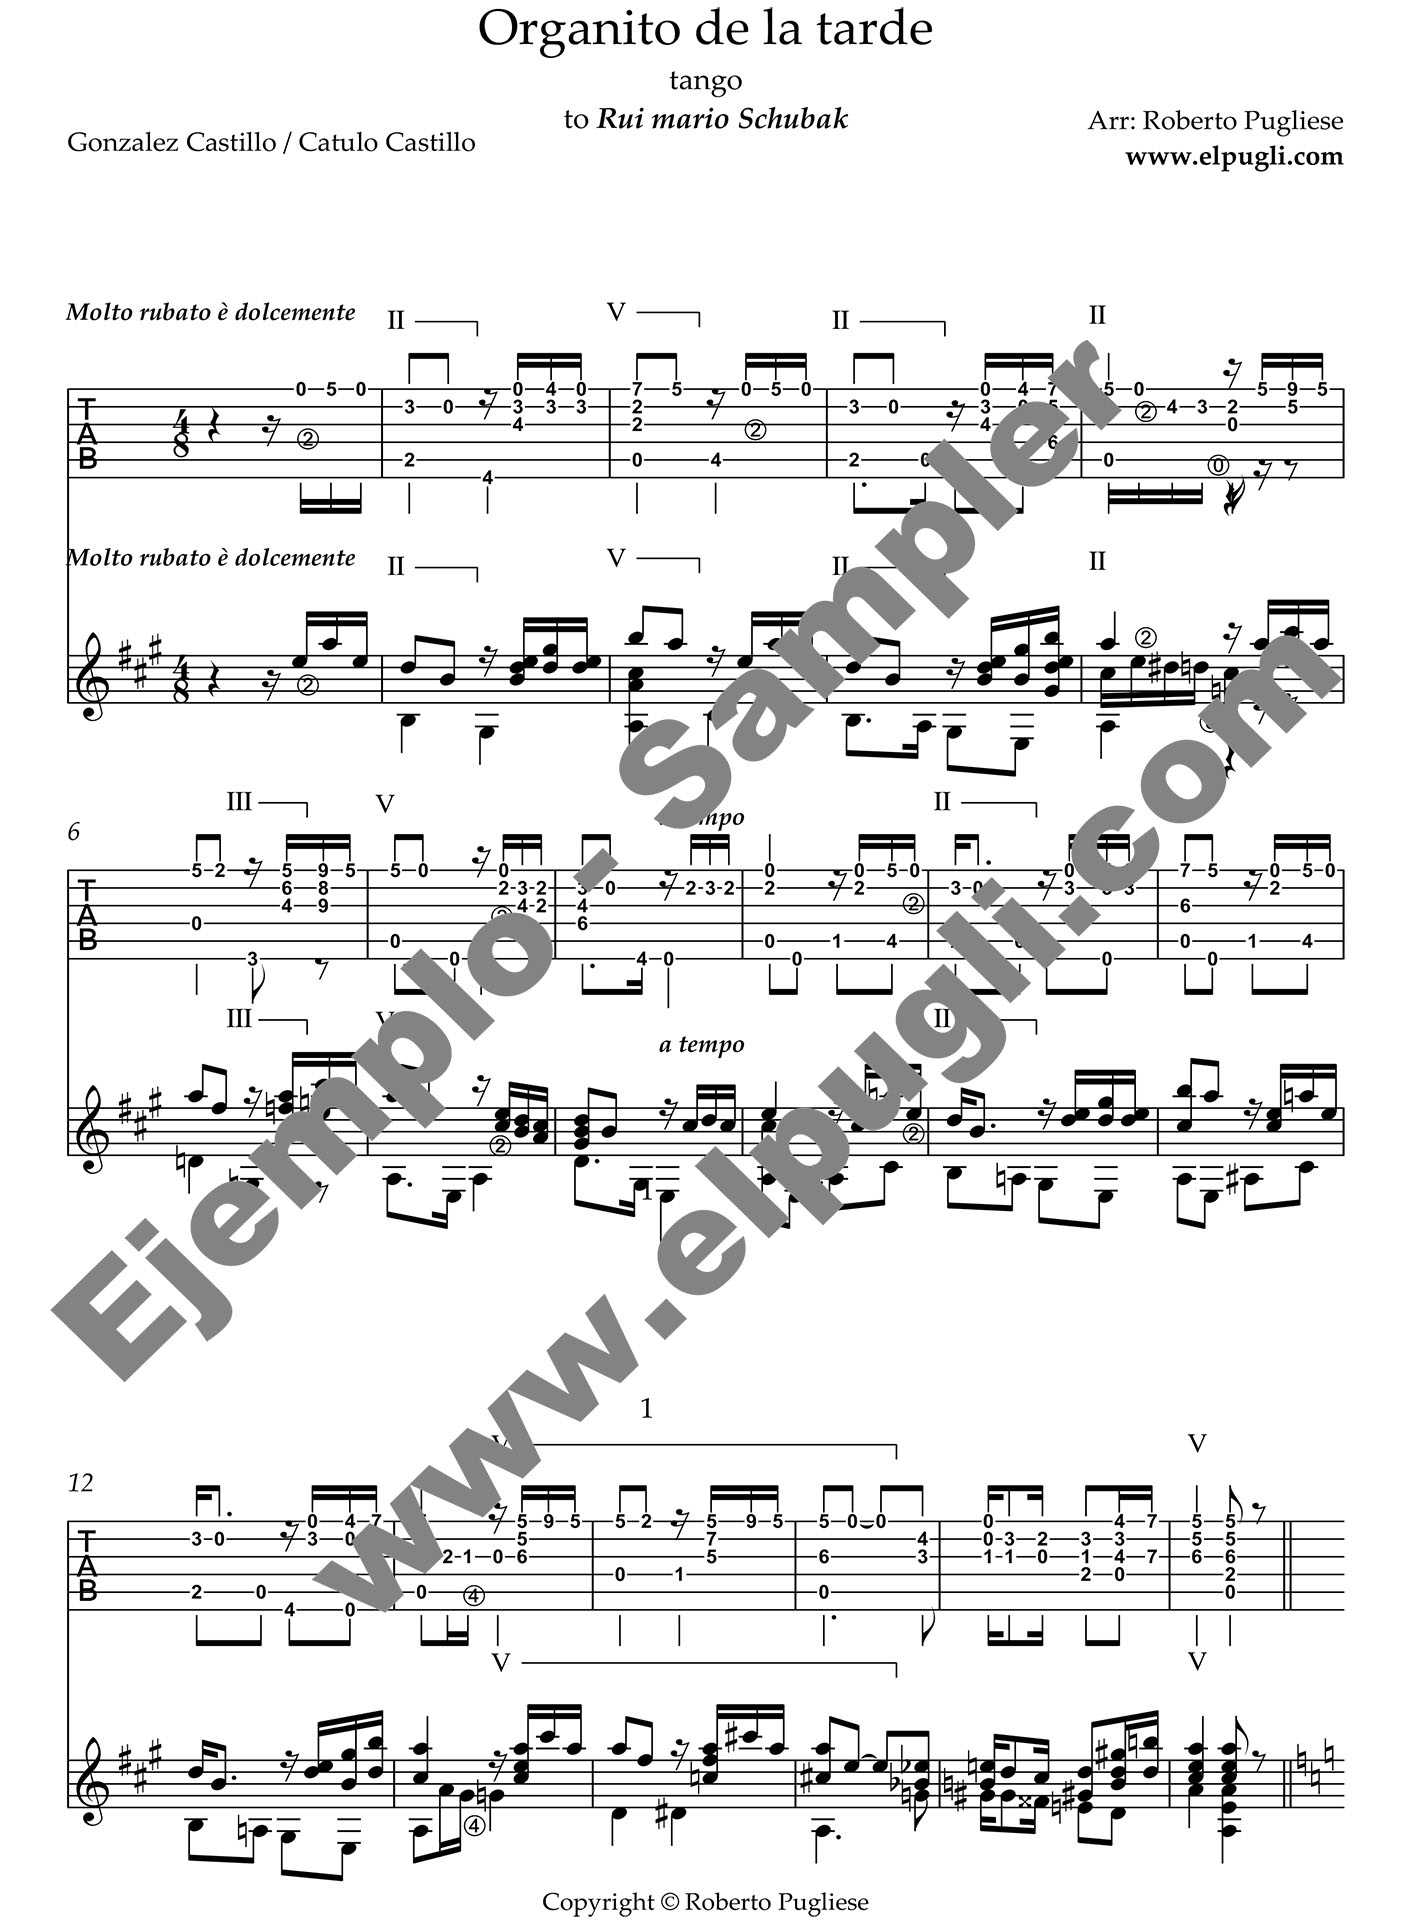 Organito de la tarde 🎼 Score classical guitar. Mp3 free